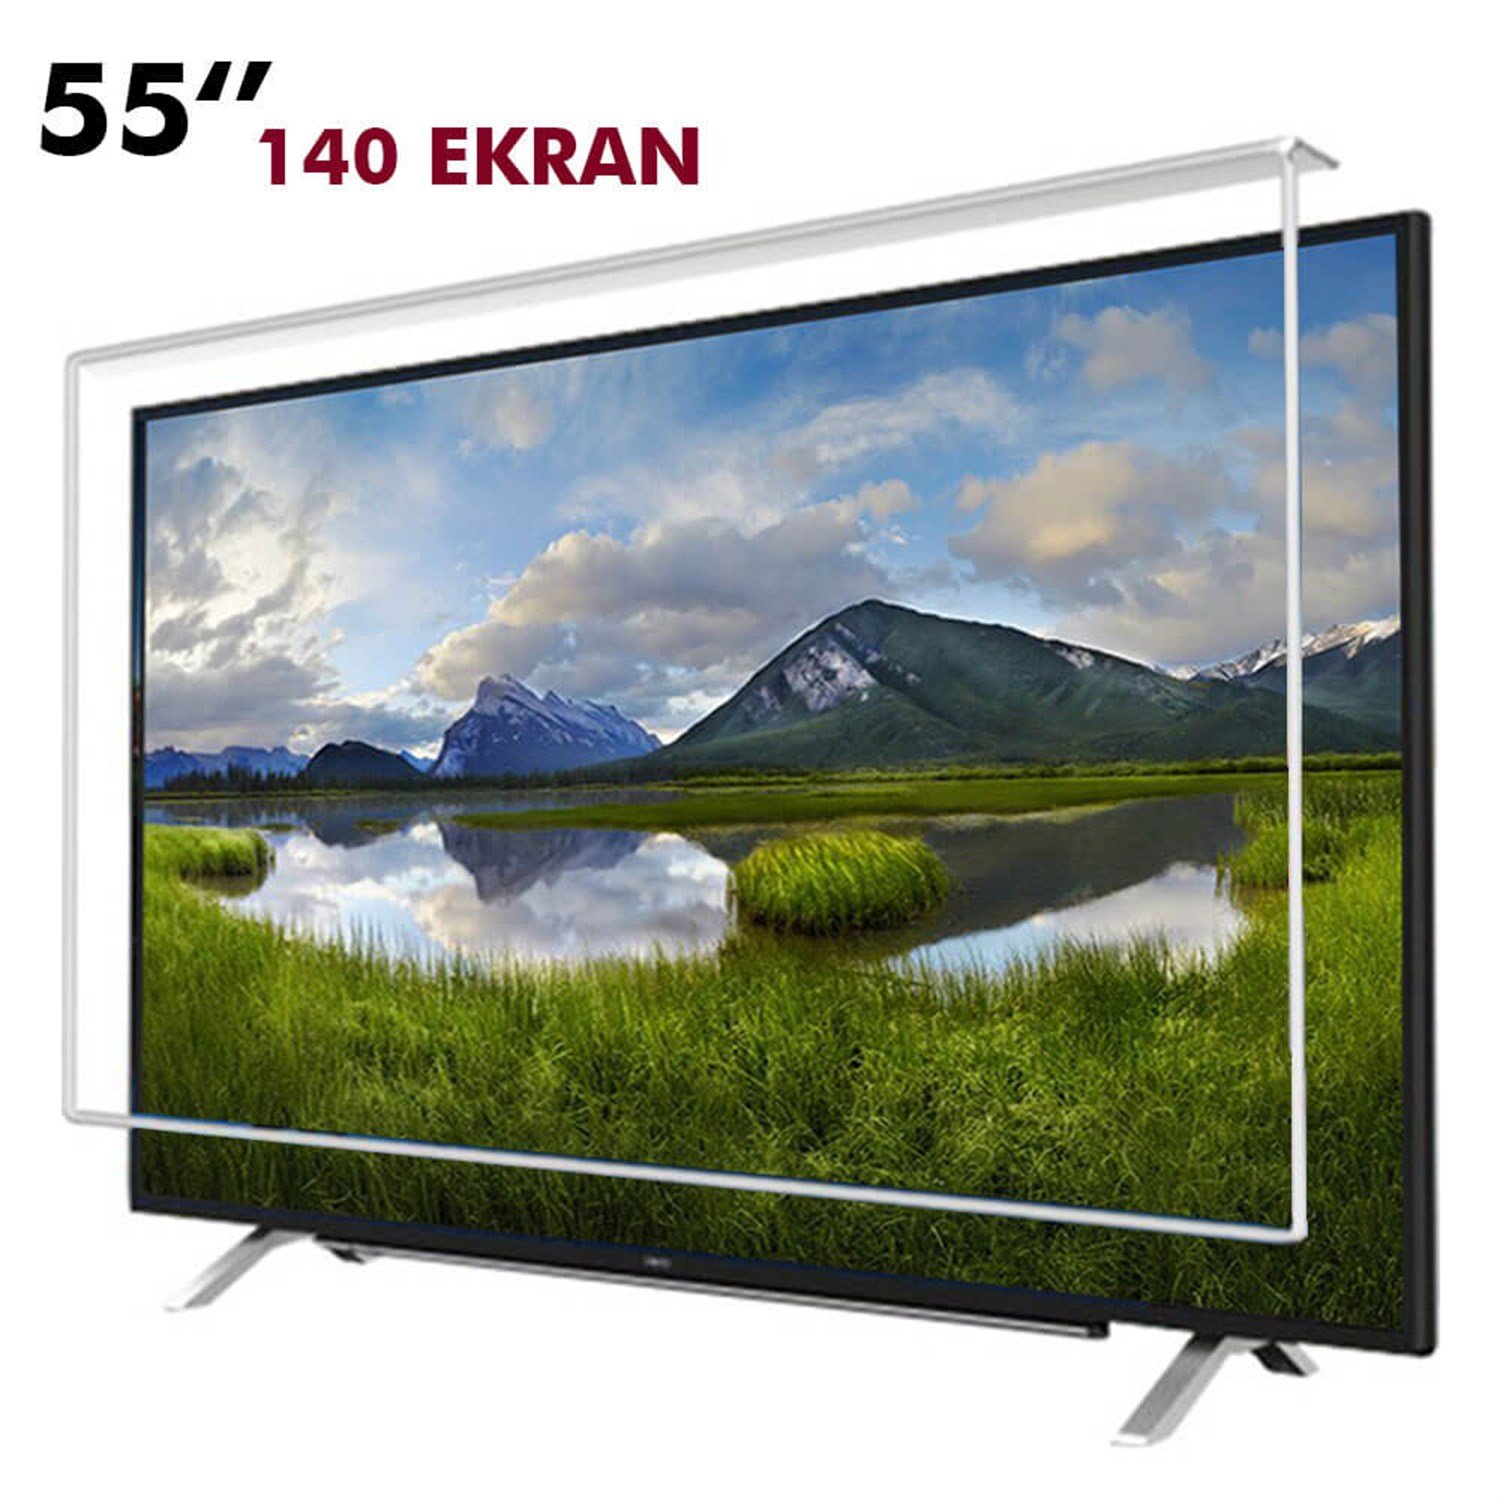 Tv Ekran Koruyucu 140 Ekran(55” inch) | Okularenkkat.com